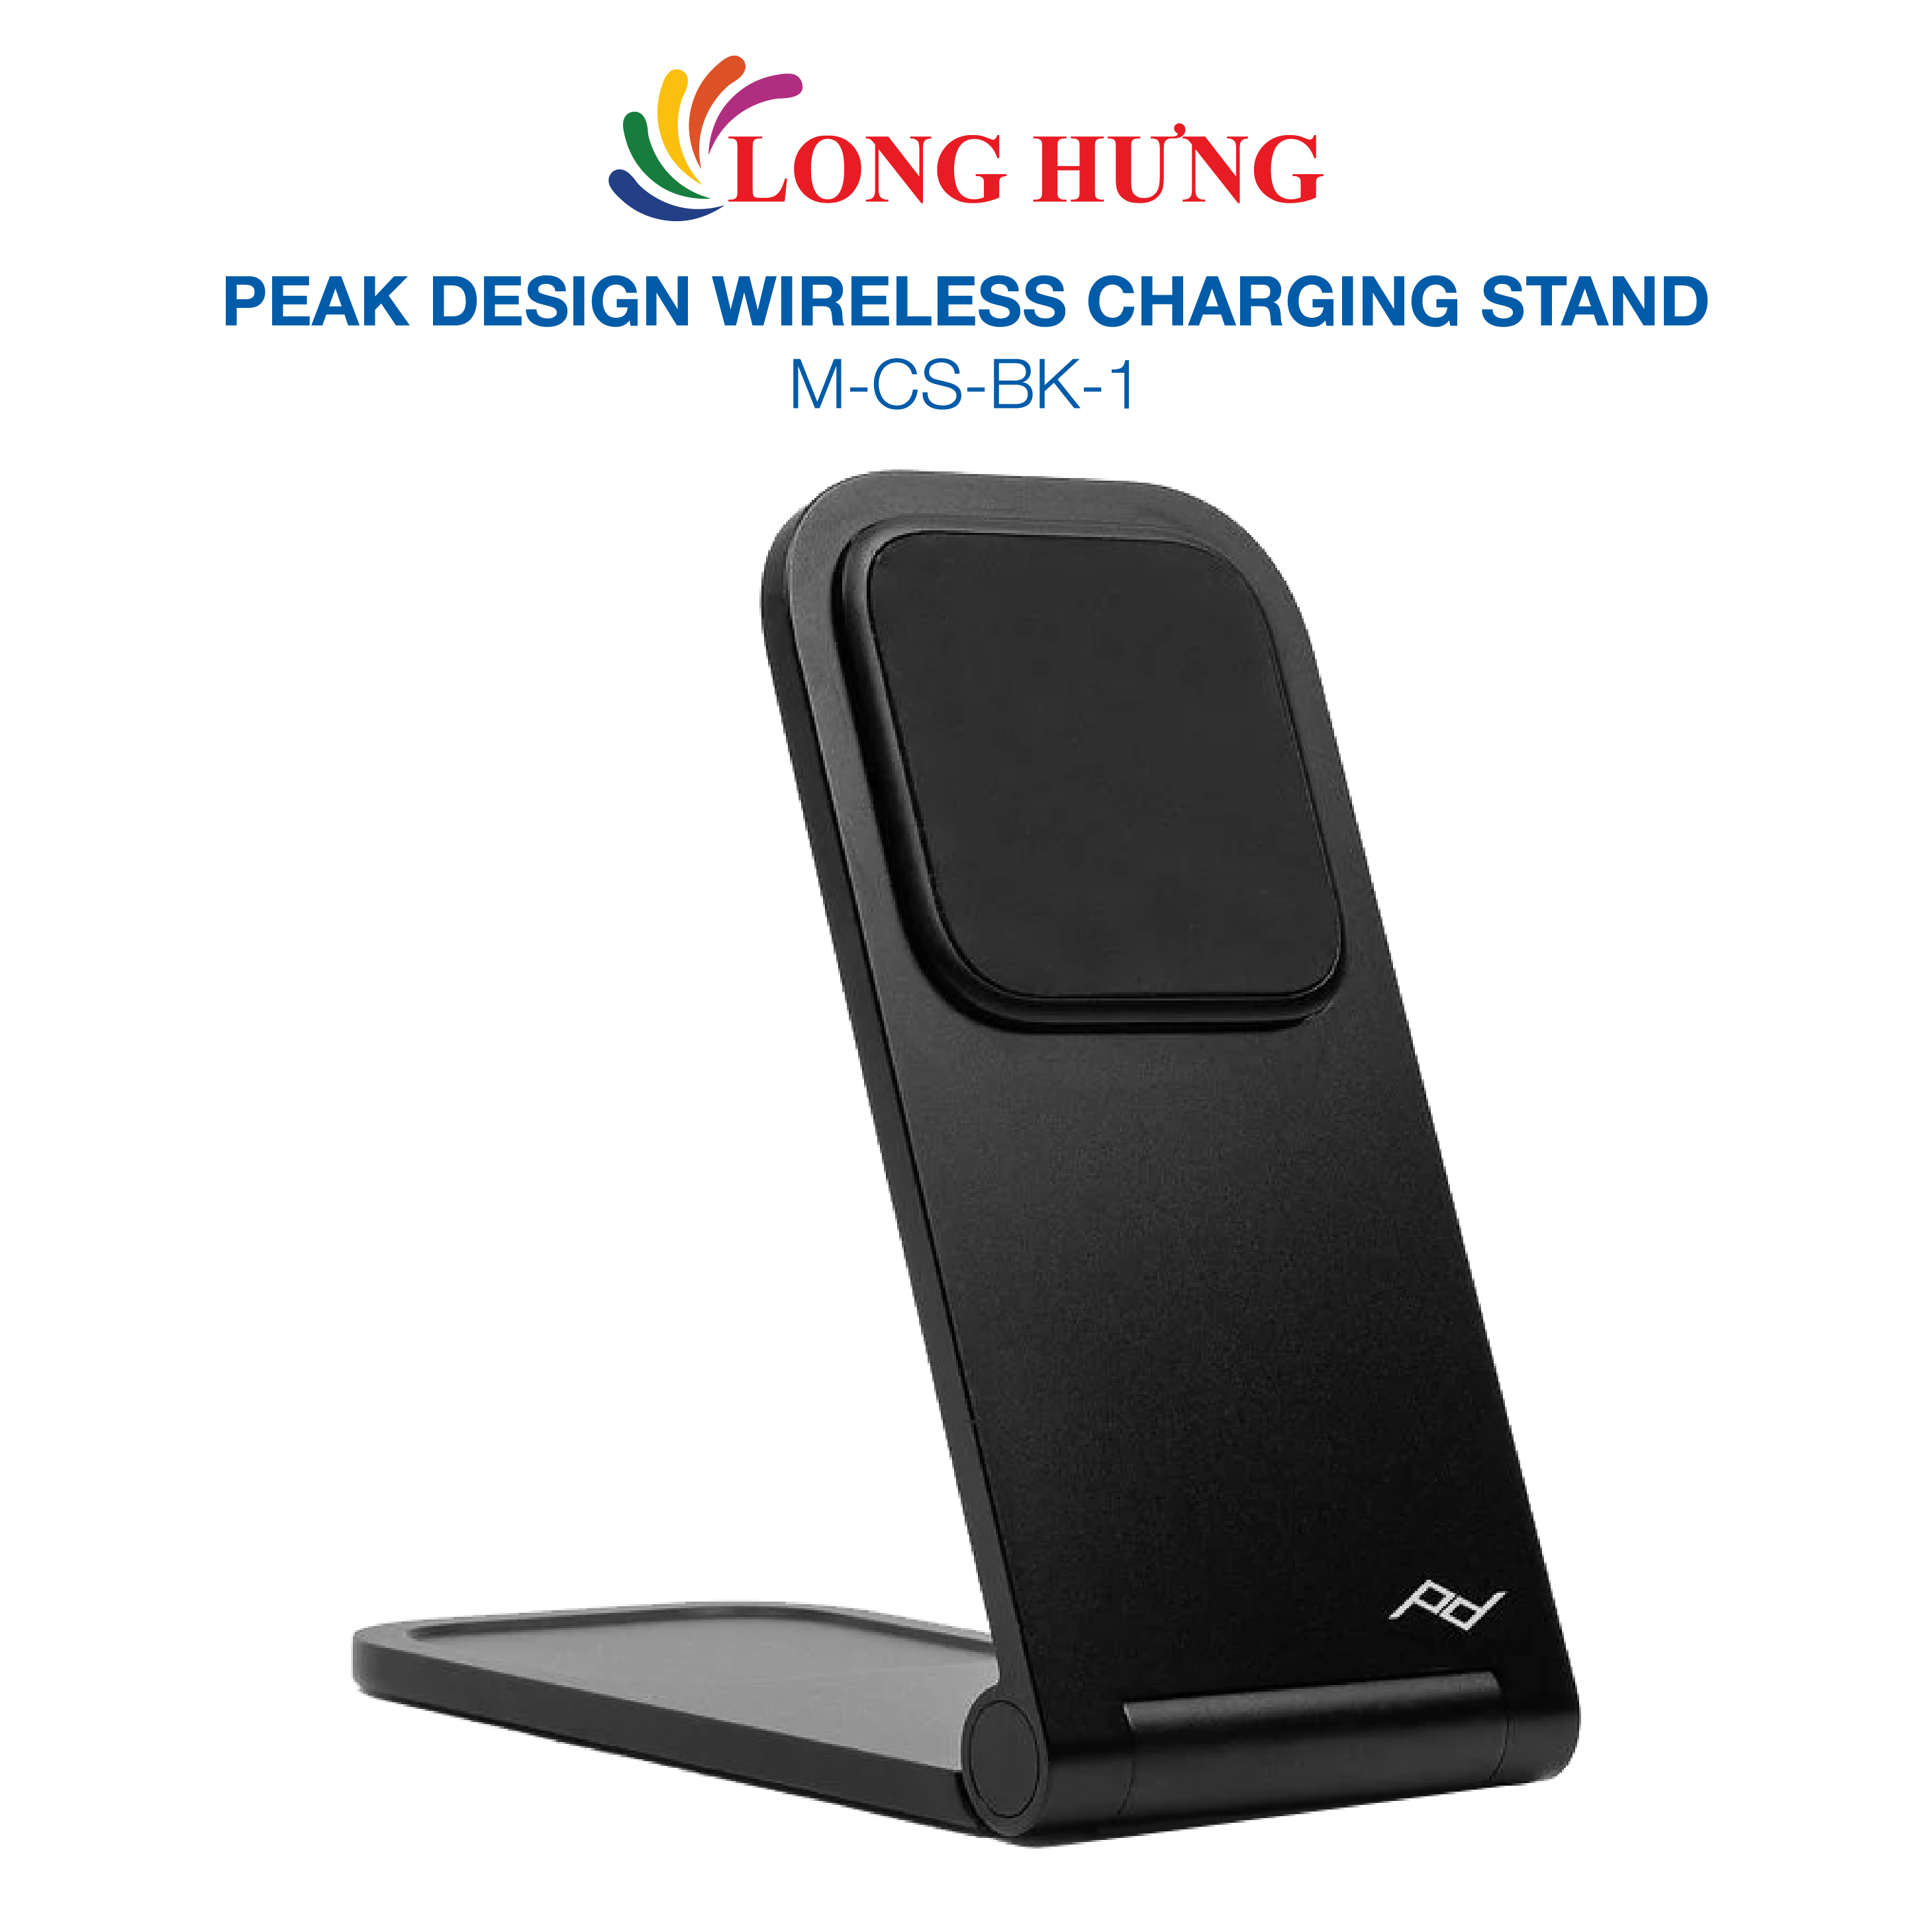 Đế sạc không dây Peak Design Wireless Charging Stand M-CS-BK-1 - Hàng chính hãng